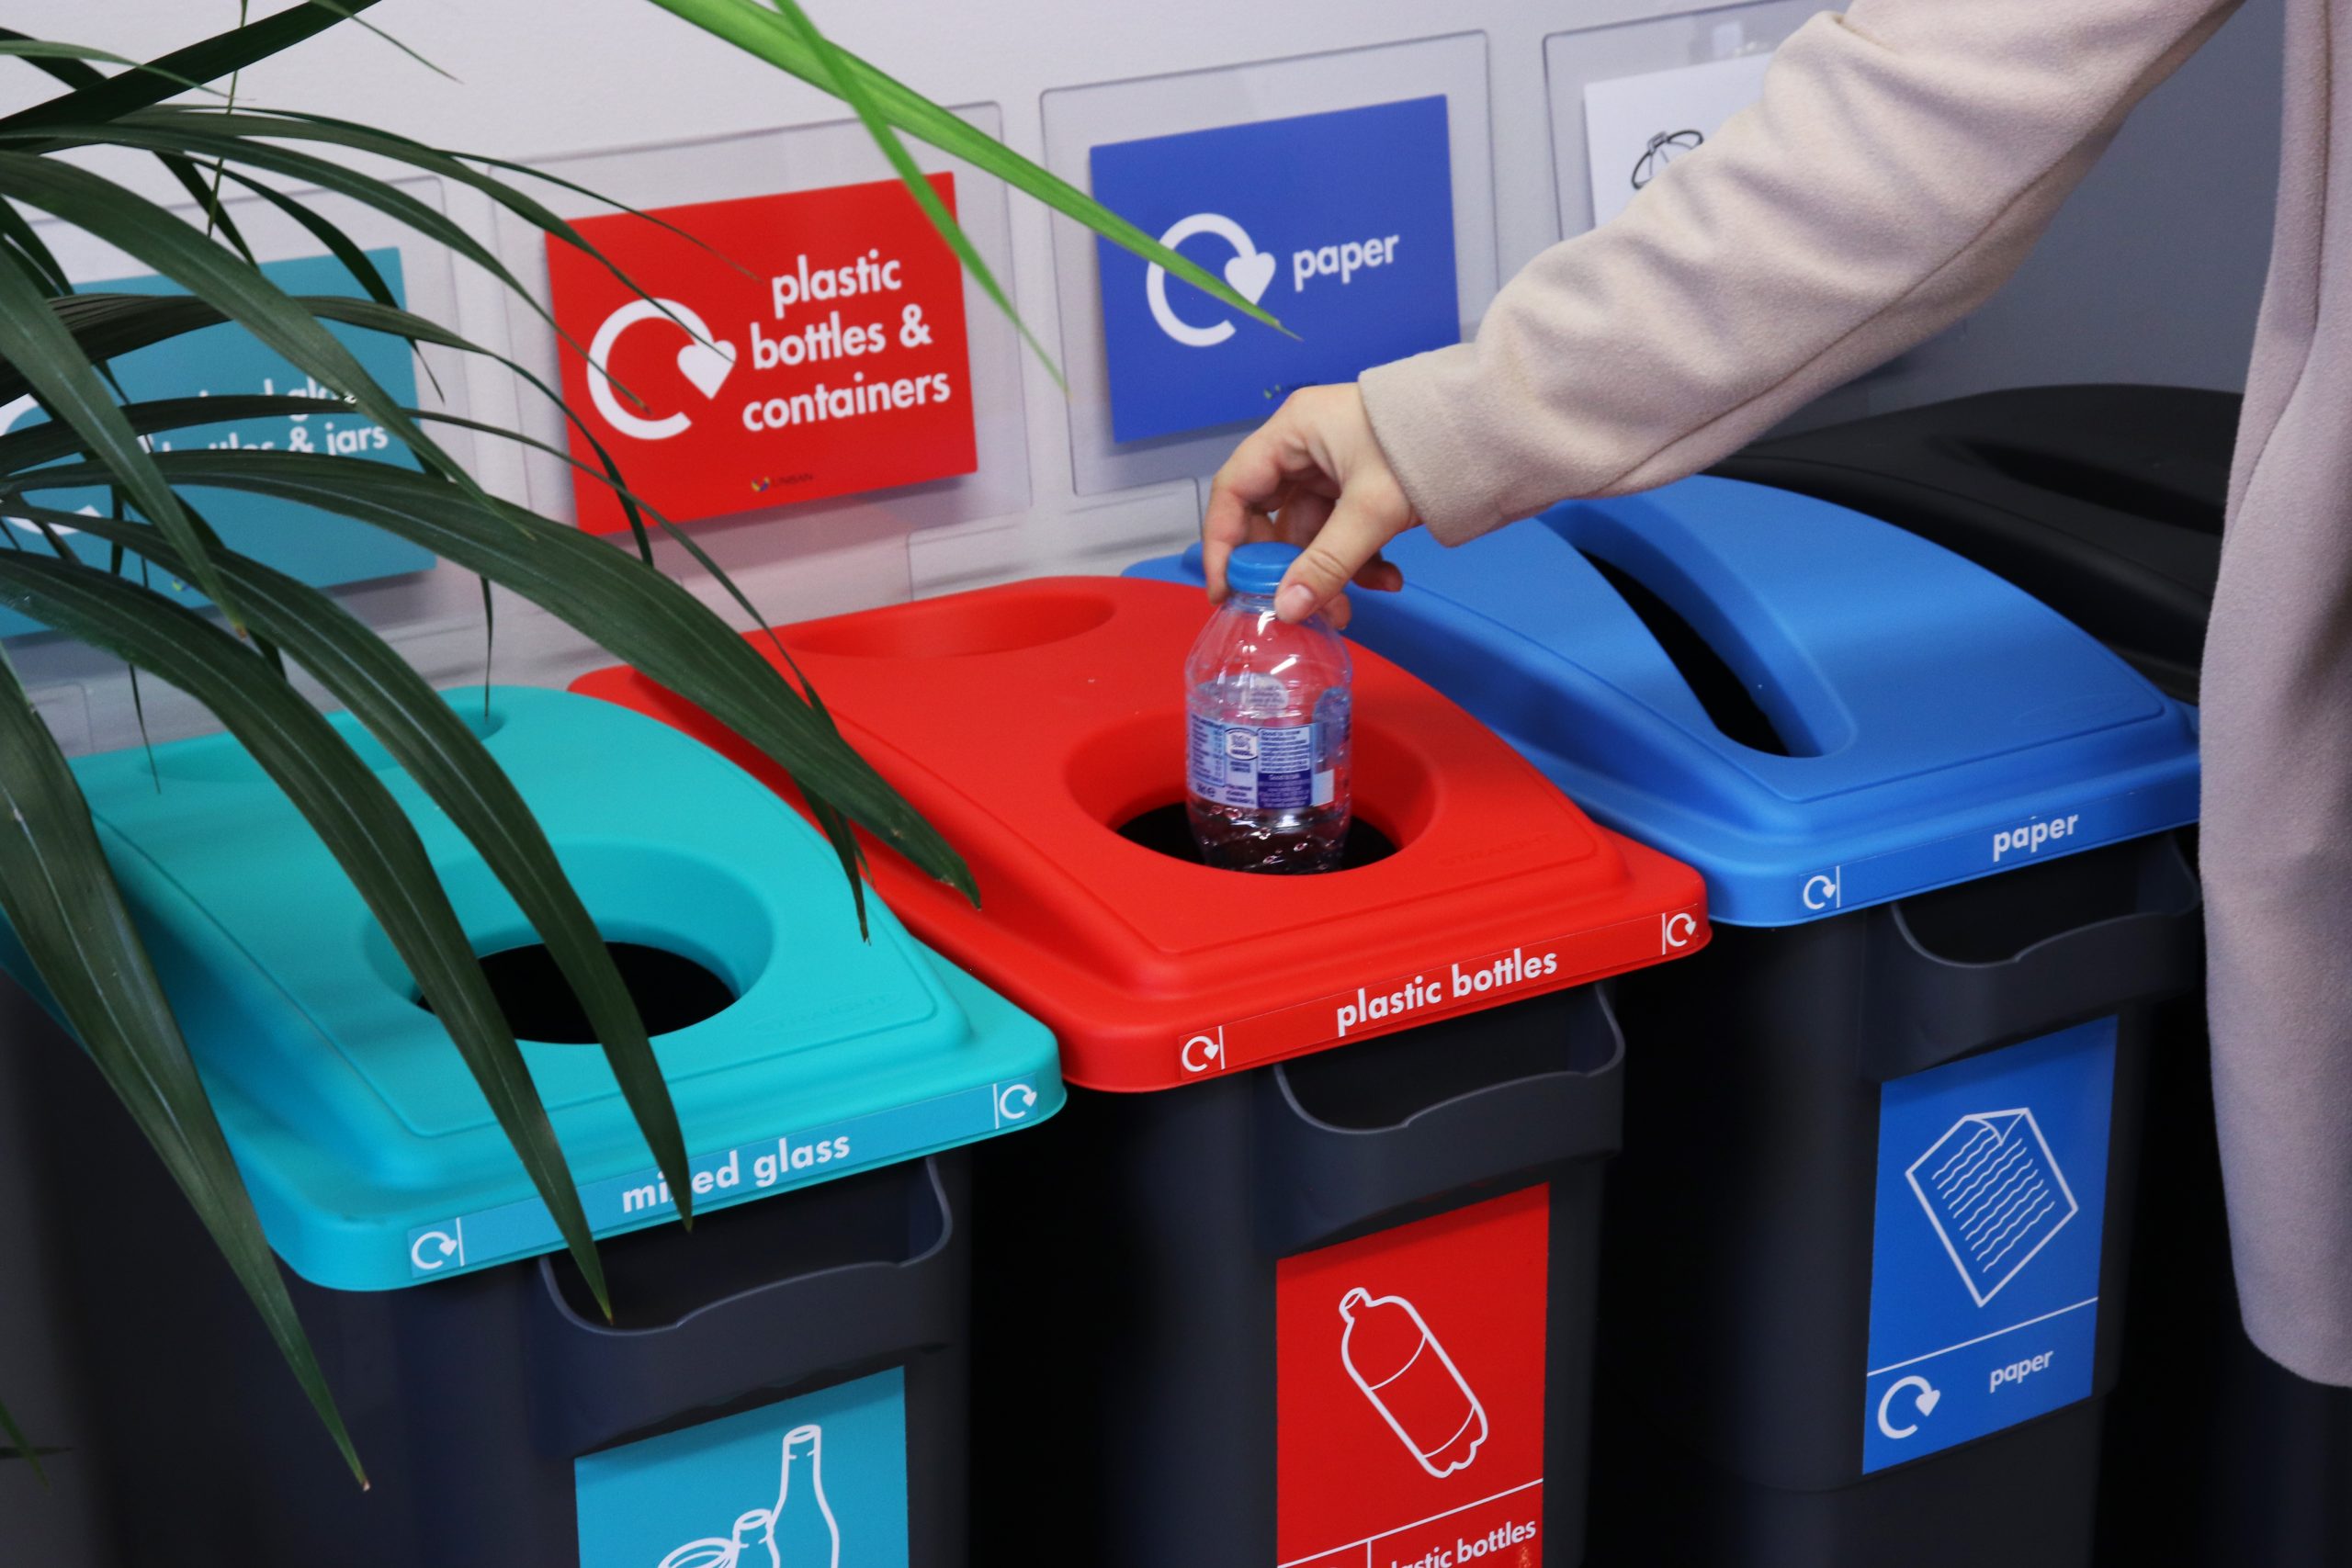 Agile recycling bins